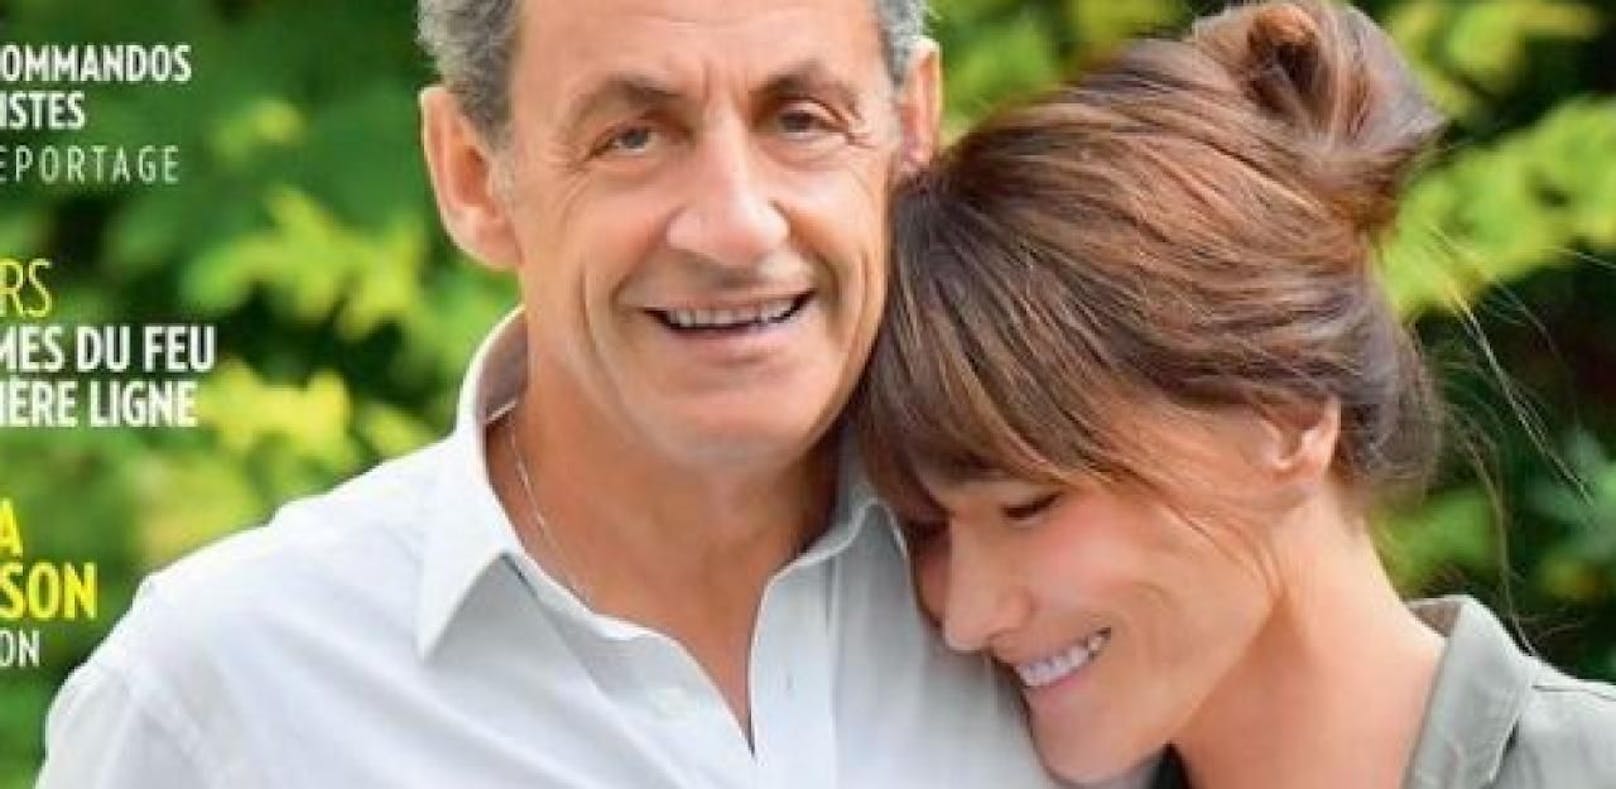 Foto von Sarkozy und Bruni sorgt für Spott